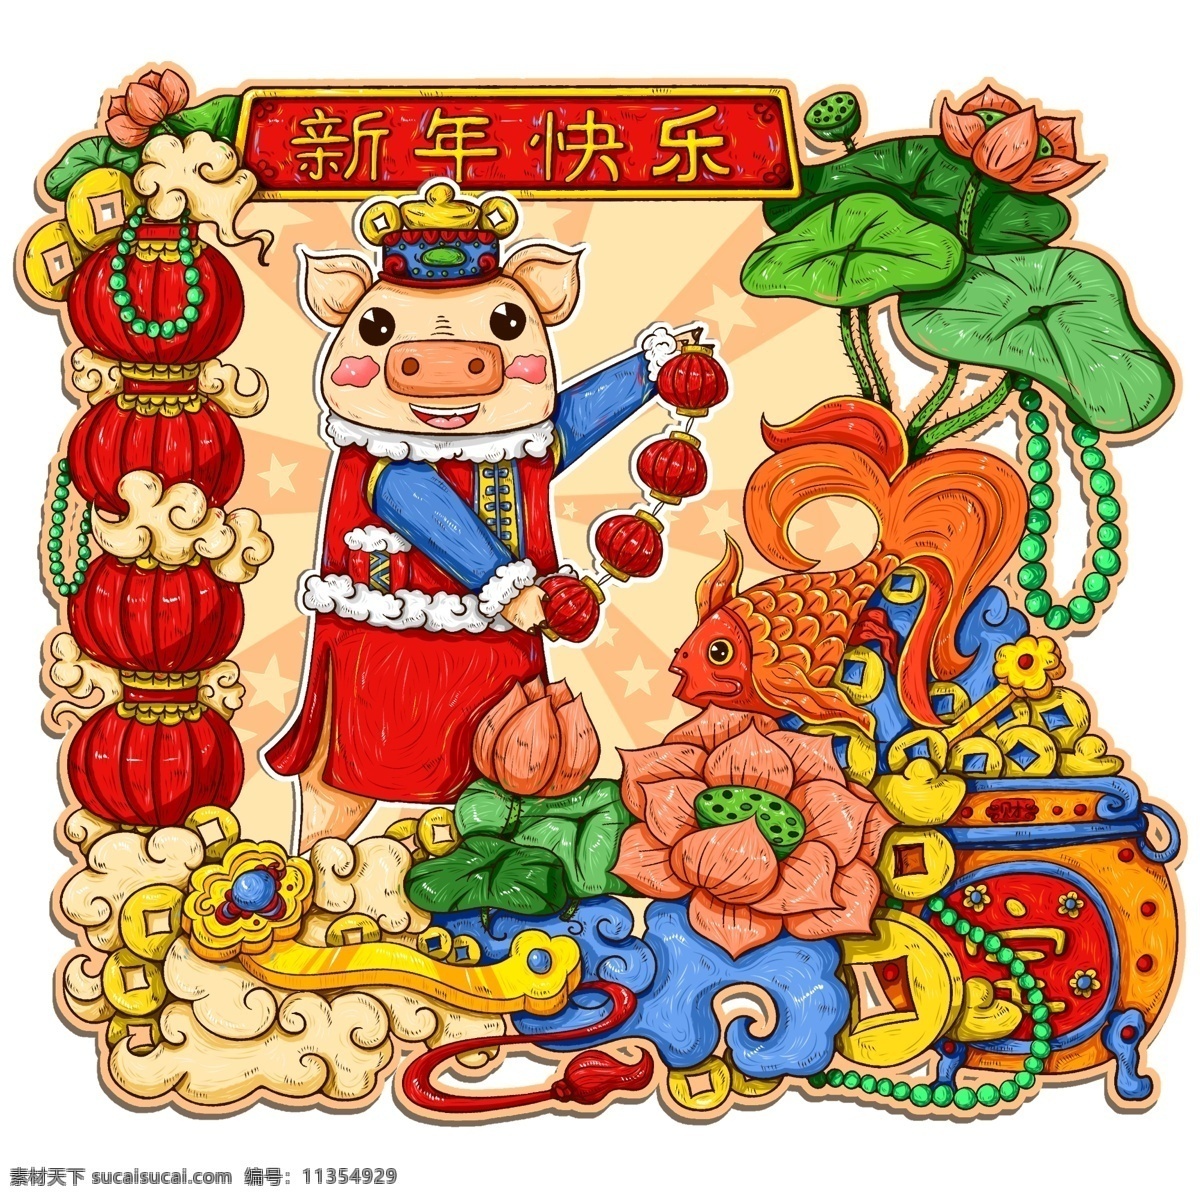 原创 手绘 中国 风 年画 新年 快乐 猪年 2019 中国风 新年快乐 元素 海报素材 商用 猪猪 猪元素